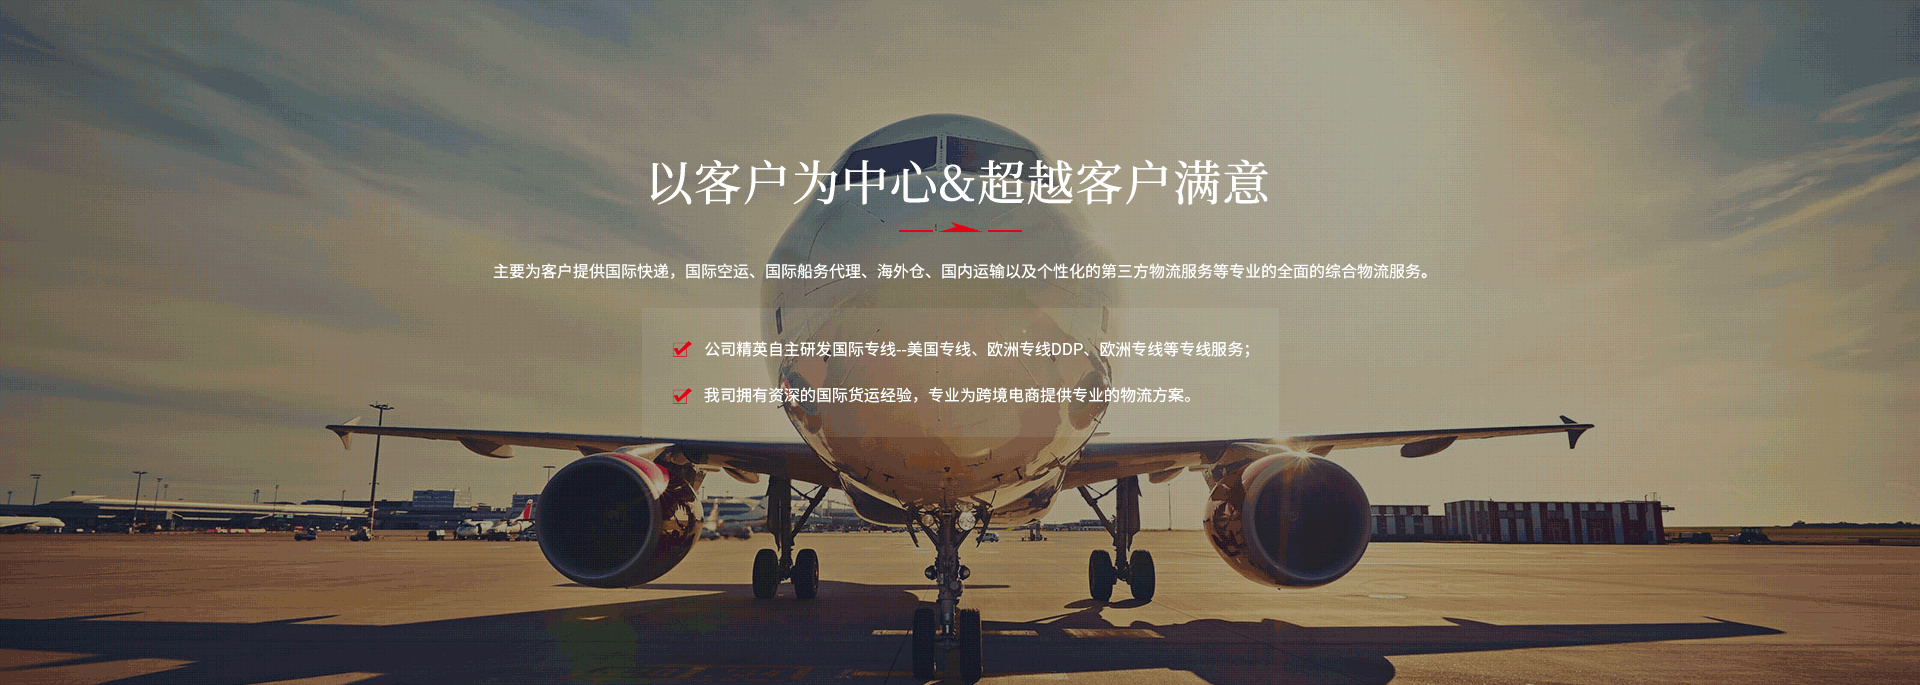 fba物流,fba空運,深圳市品嘉國際物流有限公司